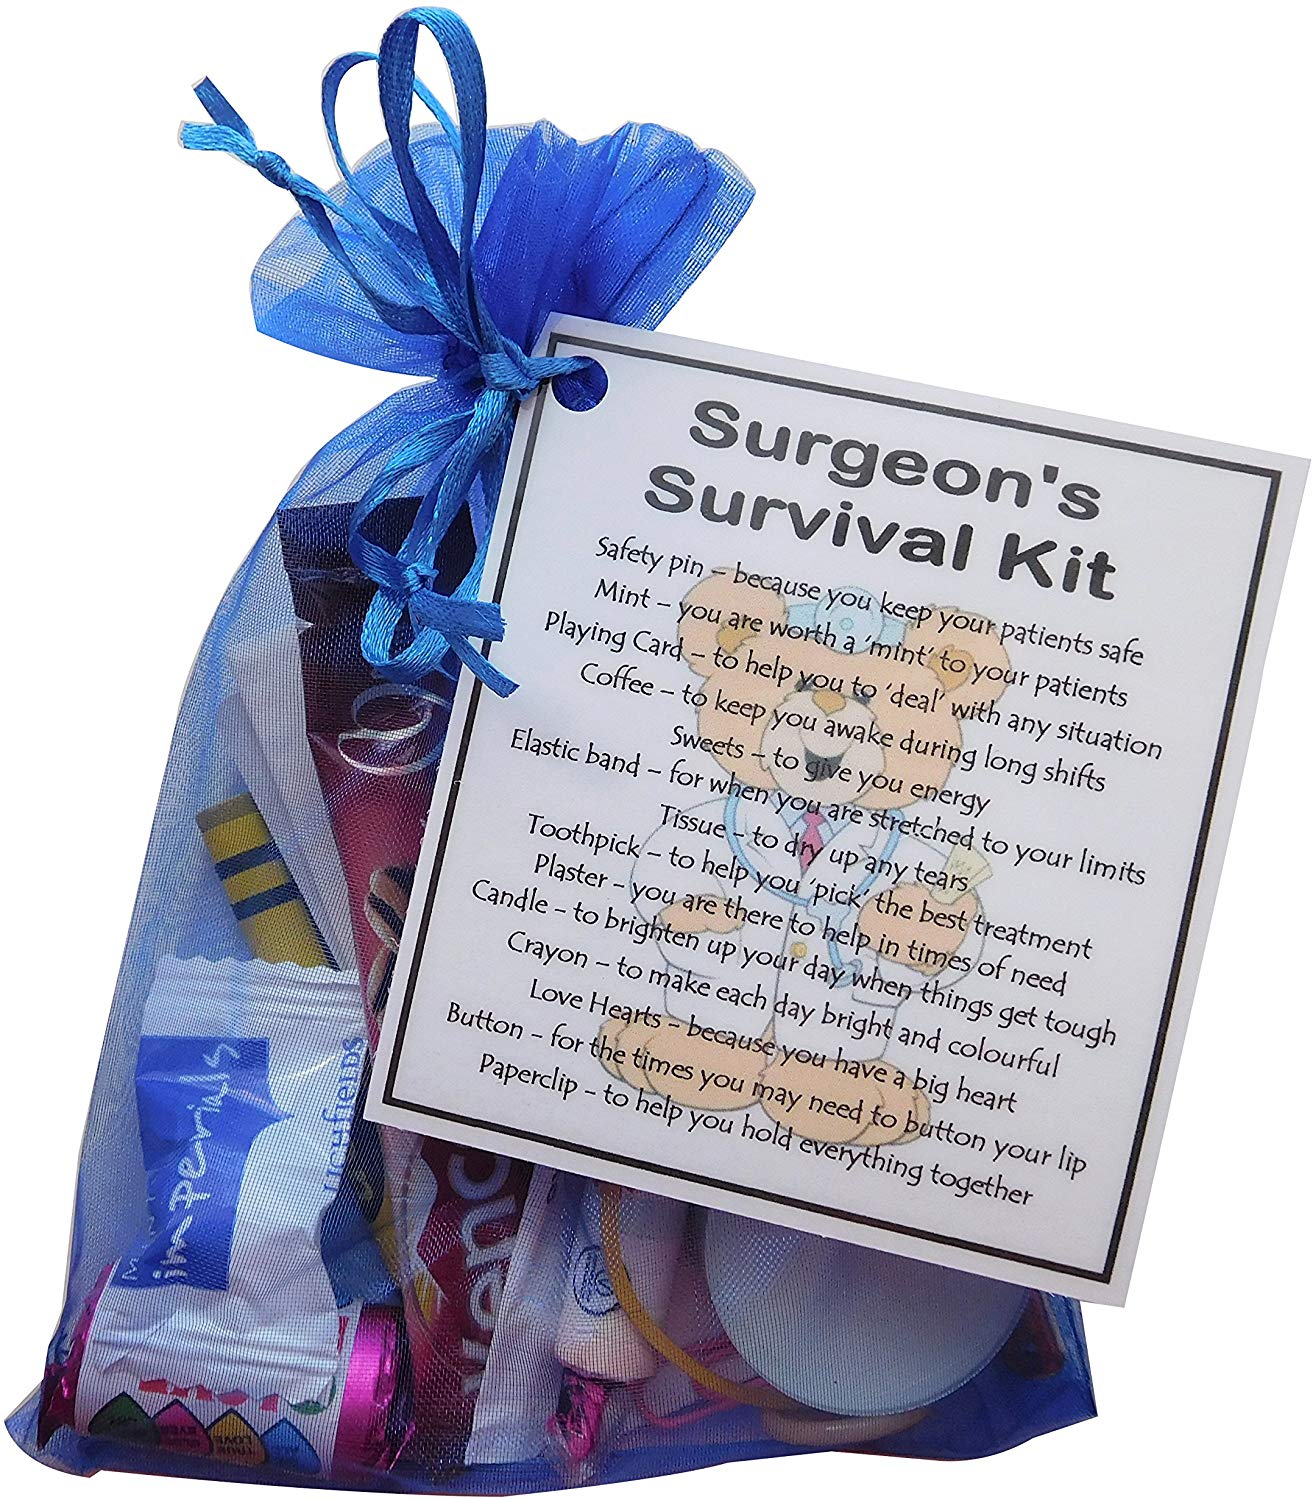 Surgeon's Survival Kit